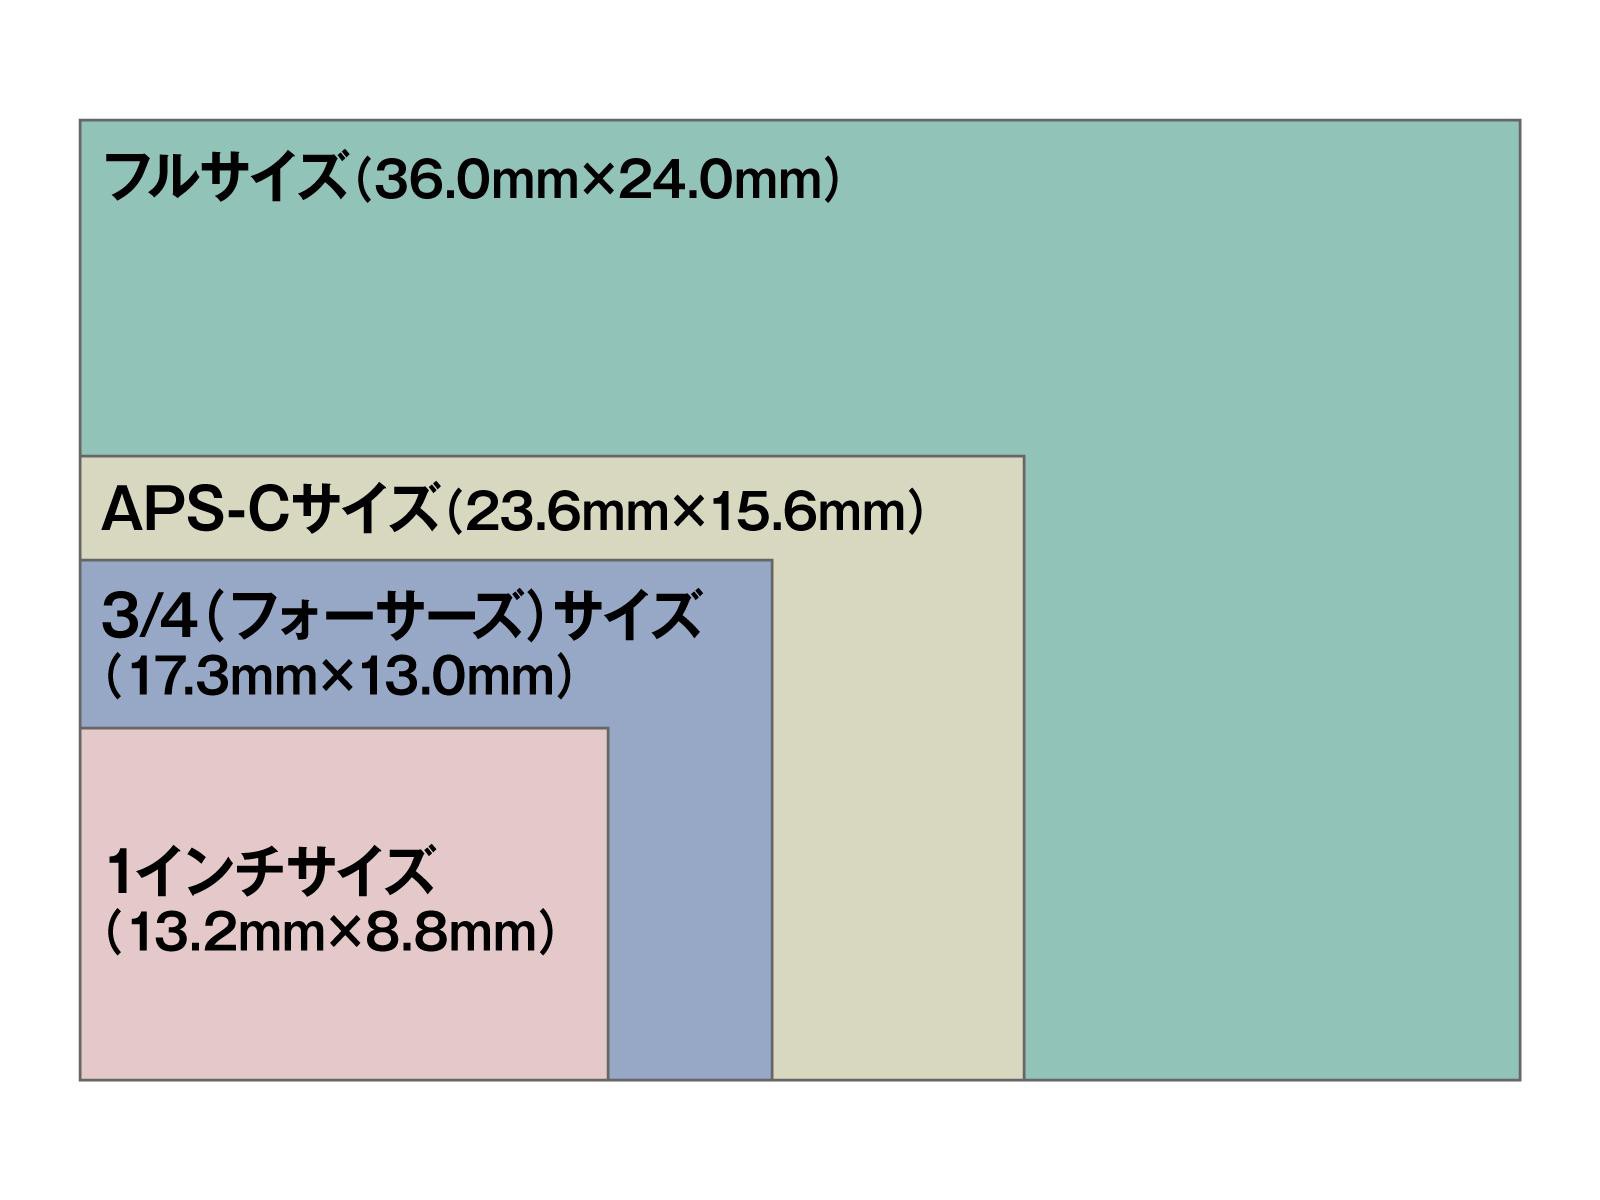 フィルムからデジカメへの過渡期の中で生まれた規格「35mmフルサイズ」。その他のセンサーサイズ（1インチ、フォーサーズ、APS-C）と比較すると、その大きさは圧倒的。